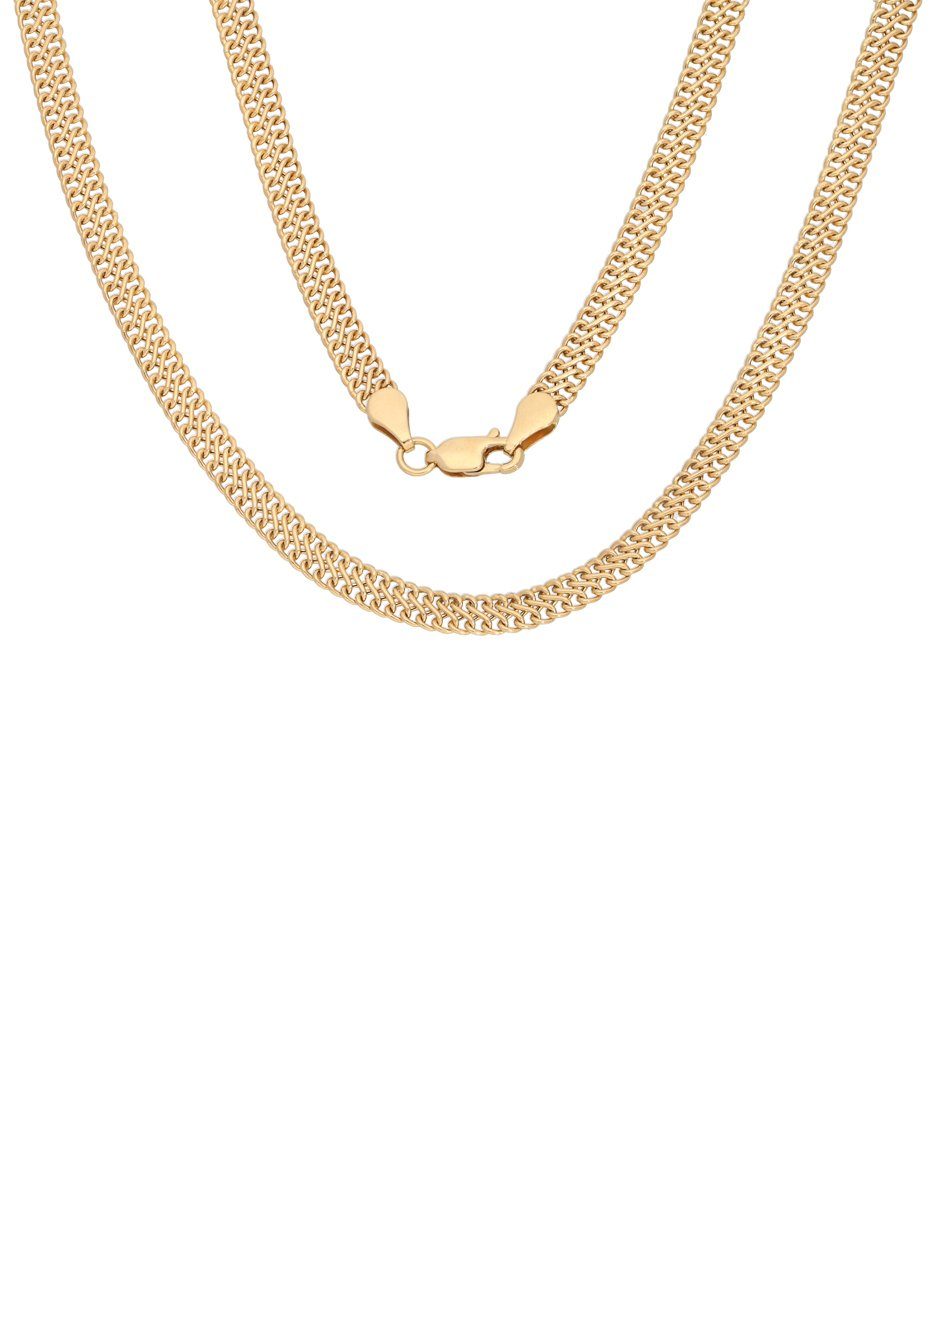 Firetti Goldkette Schmuck Geschenk Gold 375 Halsschmuck Halskette Goldkette Doppelpanzer, zu Kleid, Shirt, Jeans, Sneaker! Anlass Geburtstag Weihnachten